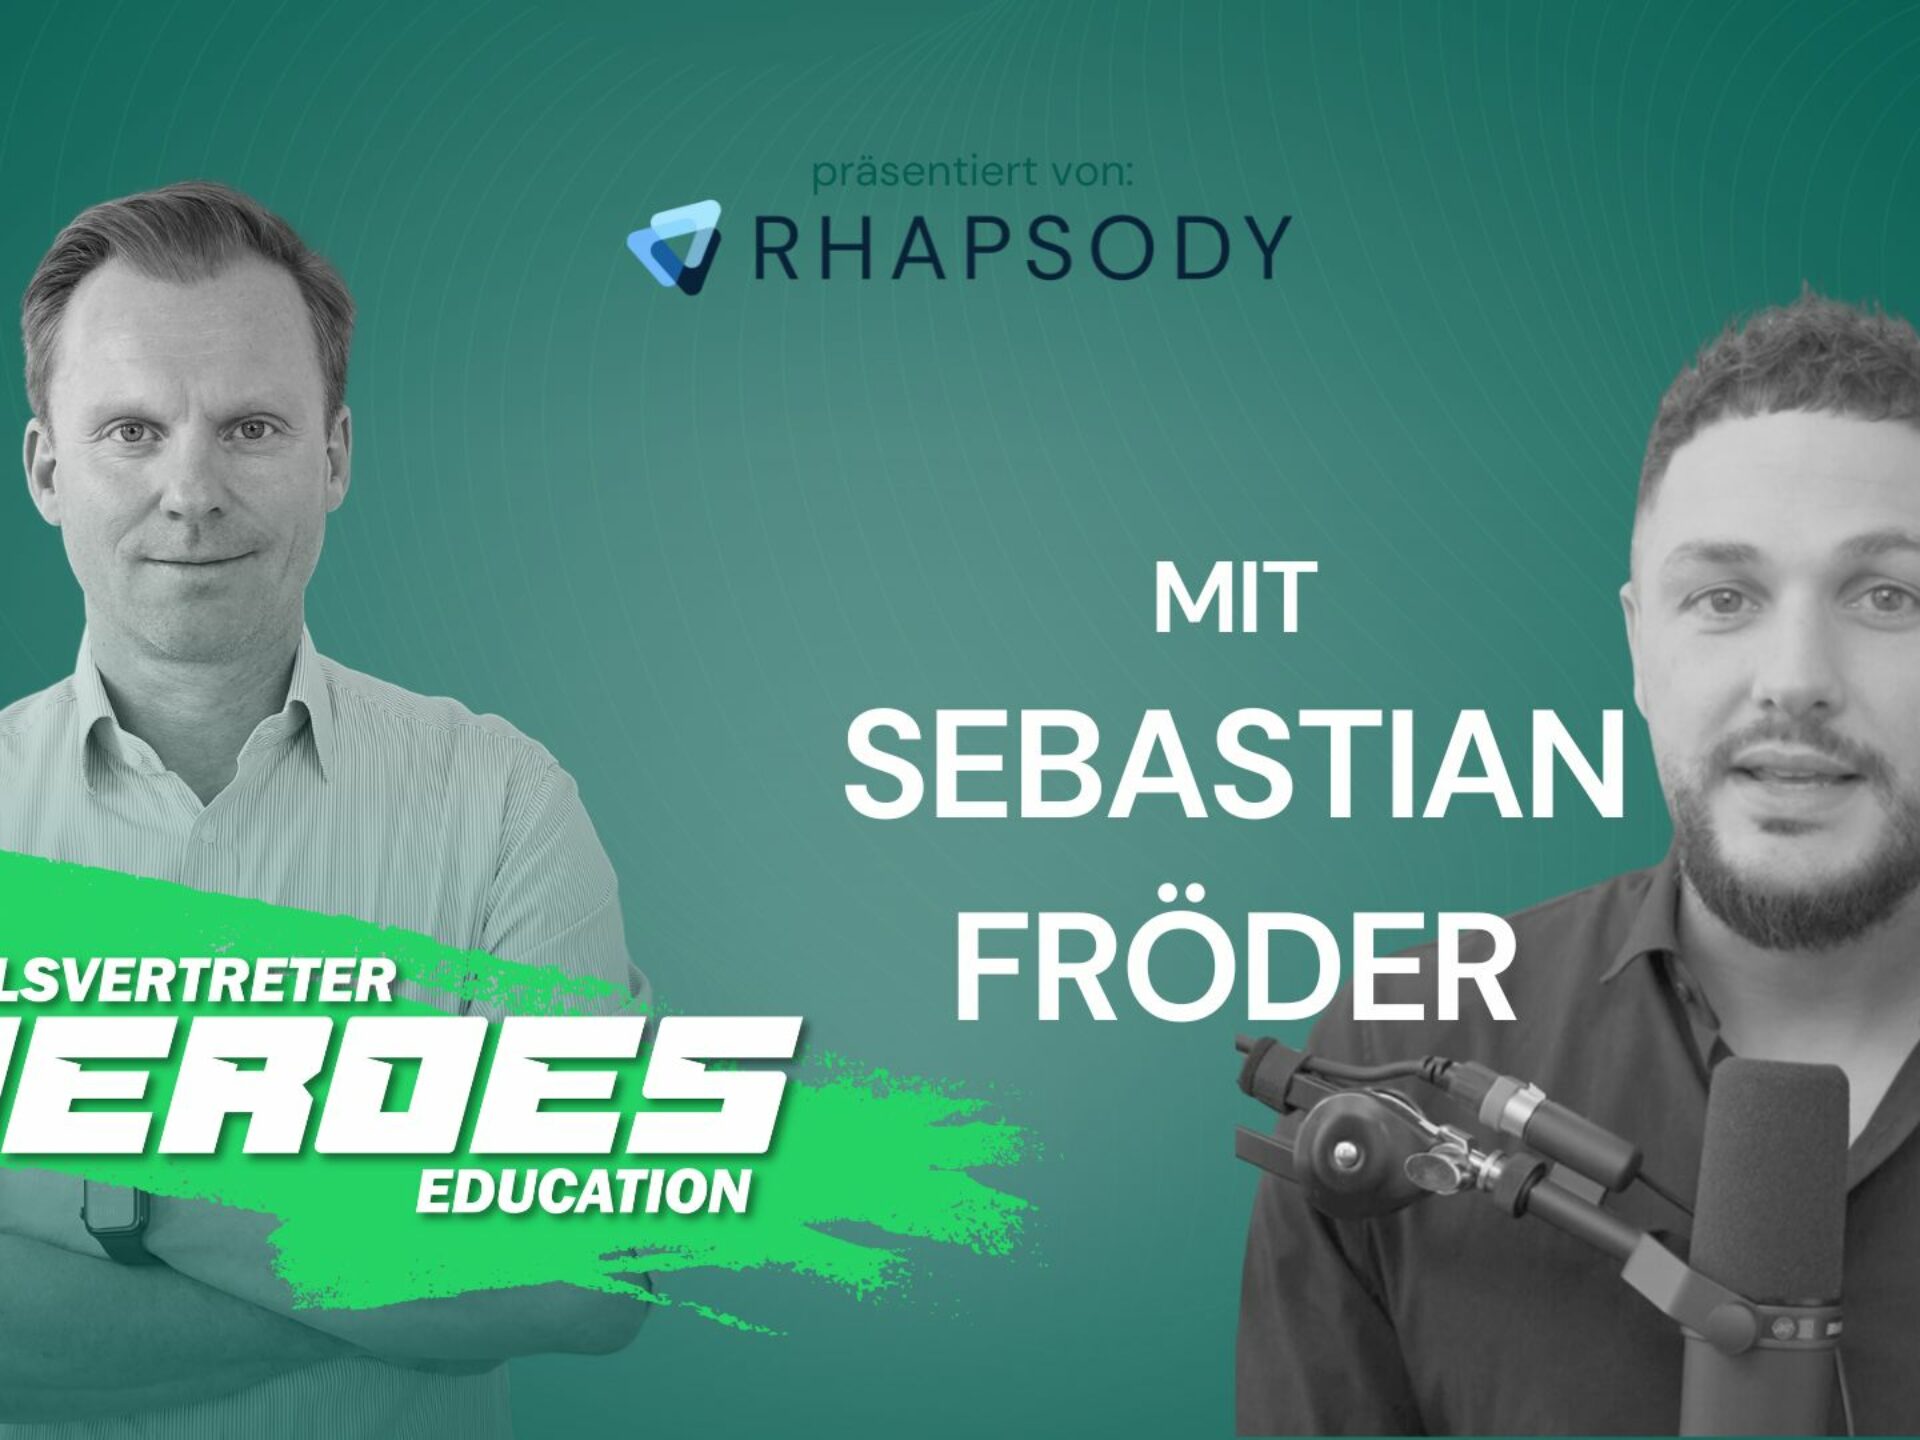 Verkaufen leicht gemacht: Sebastian Fröder revolutioniert den Vertrieb mit Psychologie